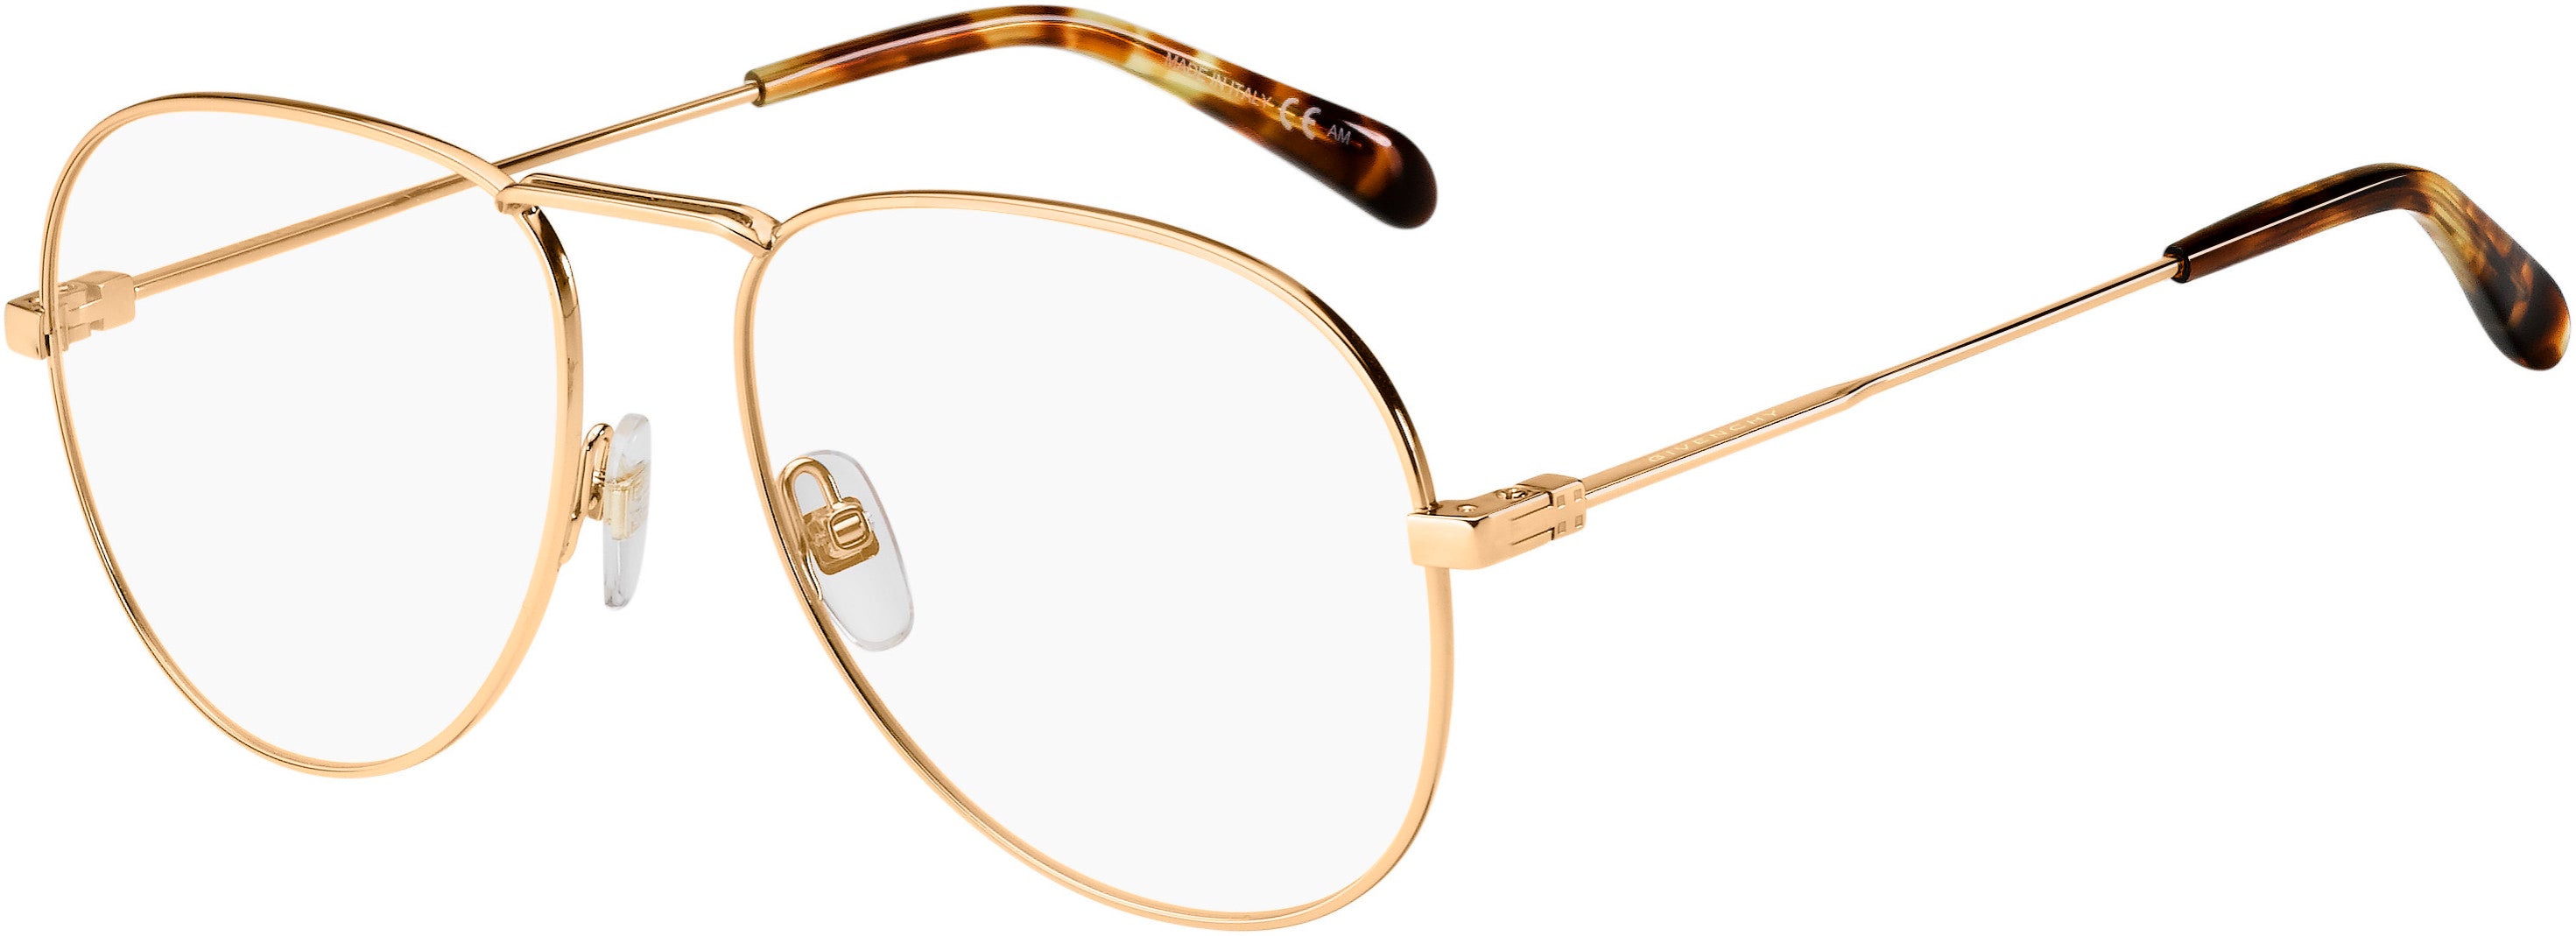  Givenchy 0117 Aviator Eyeglasses 0DDB-0DDB  Gold Copper (00 Demo Lens)